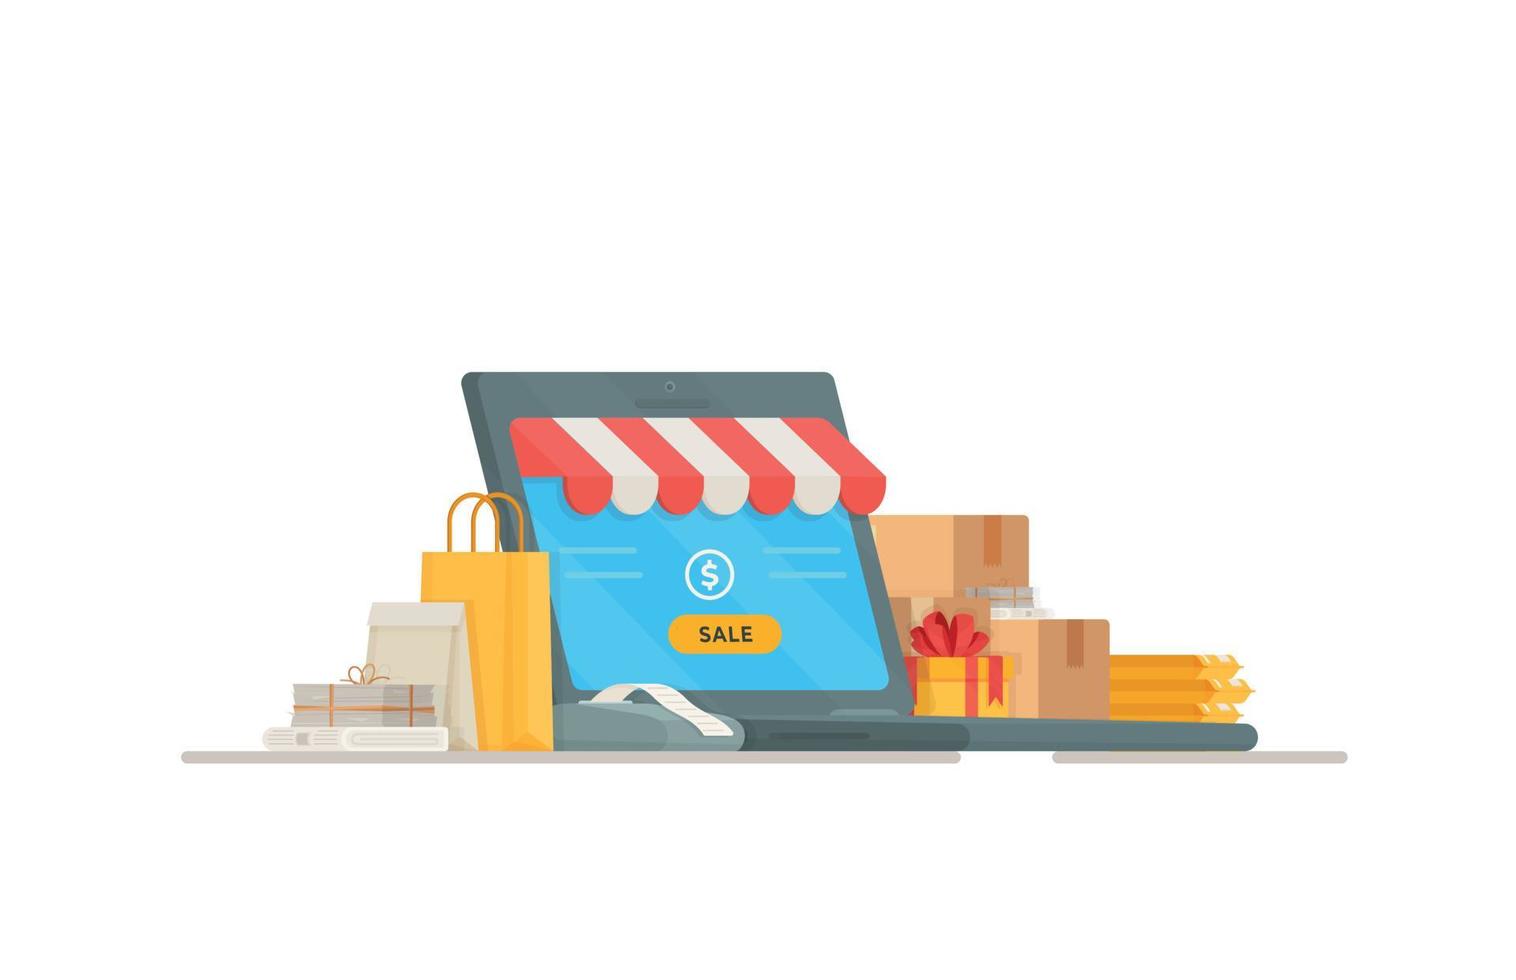 ilustração em vetor da caixa registradora. compras em uma loja. compras e pagamento. vendas online nas lojas.